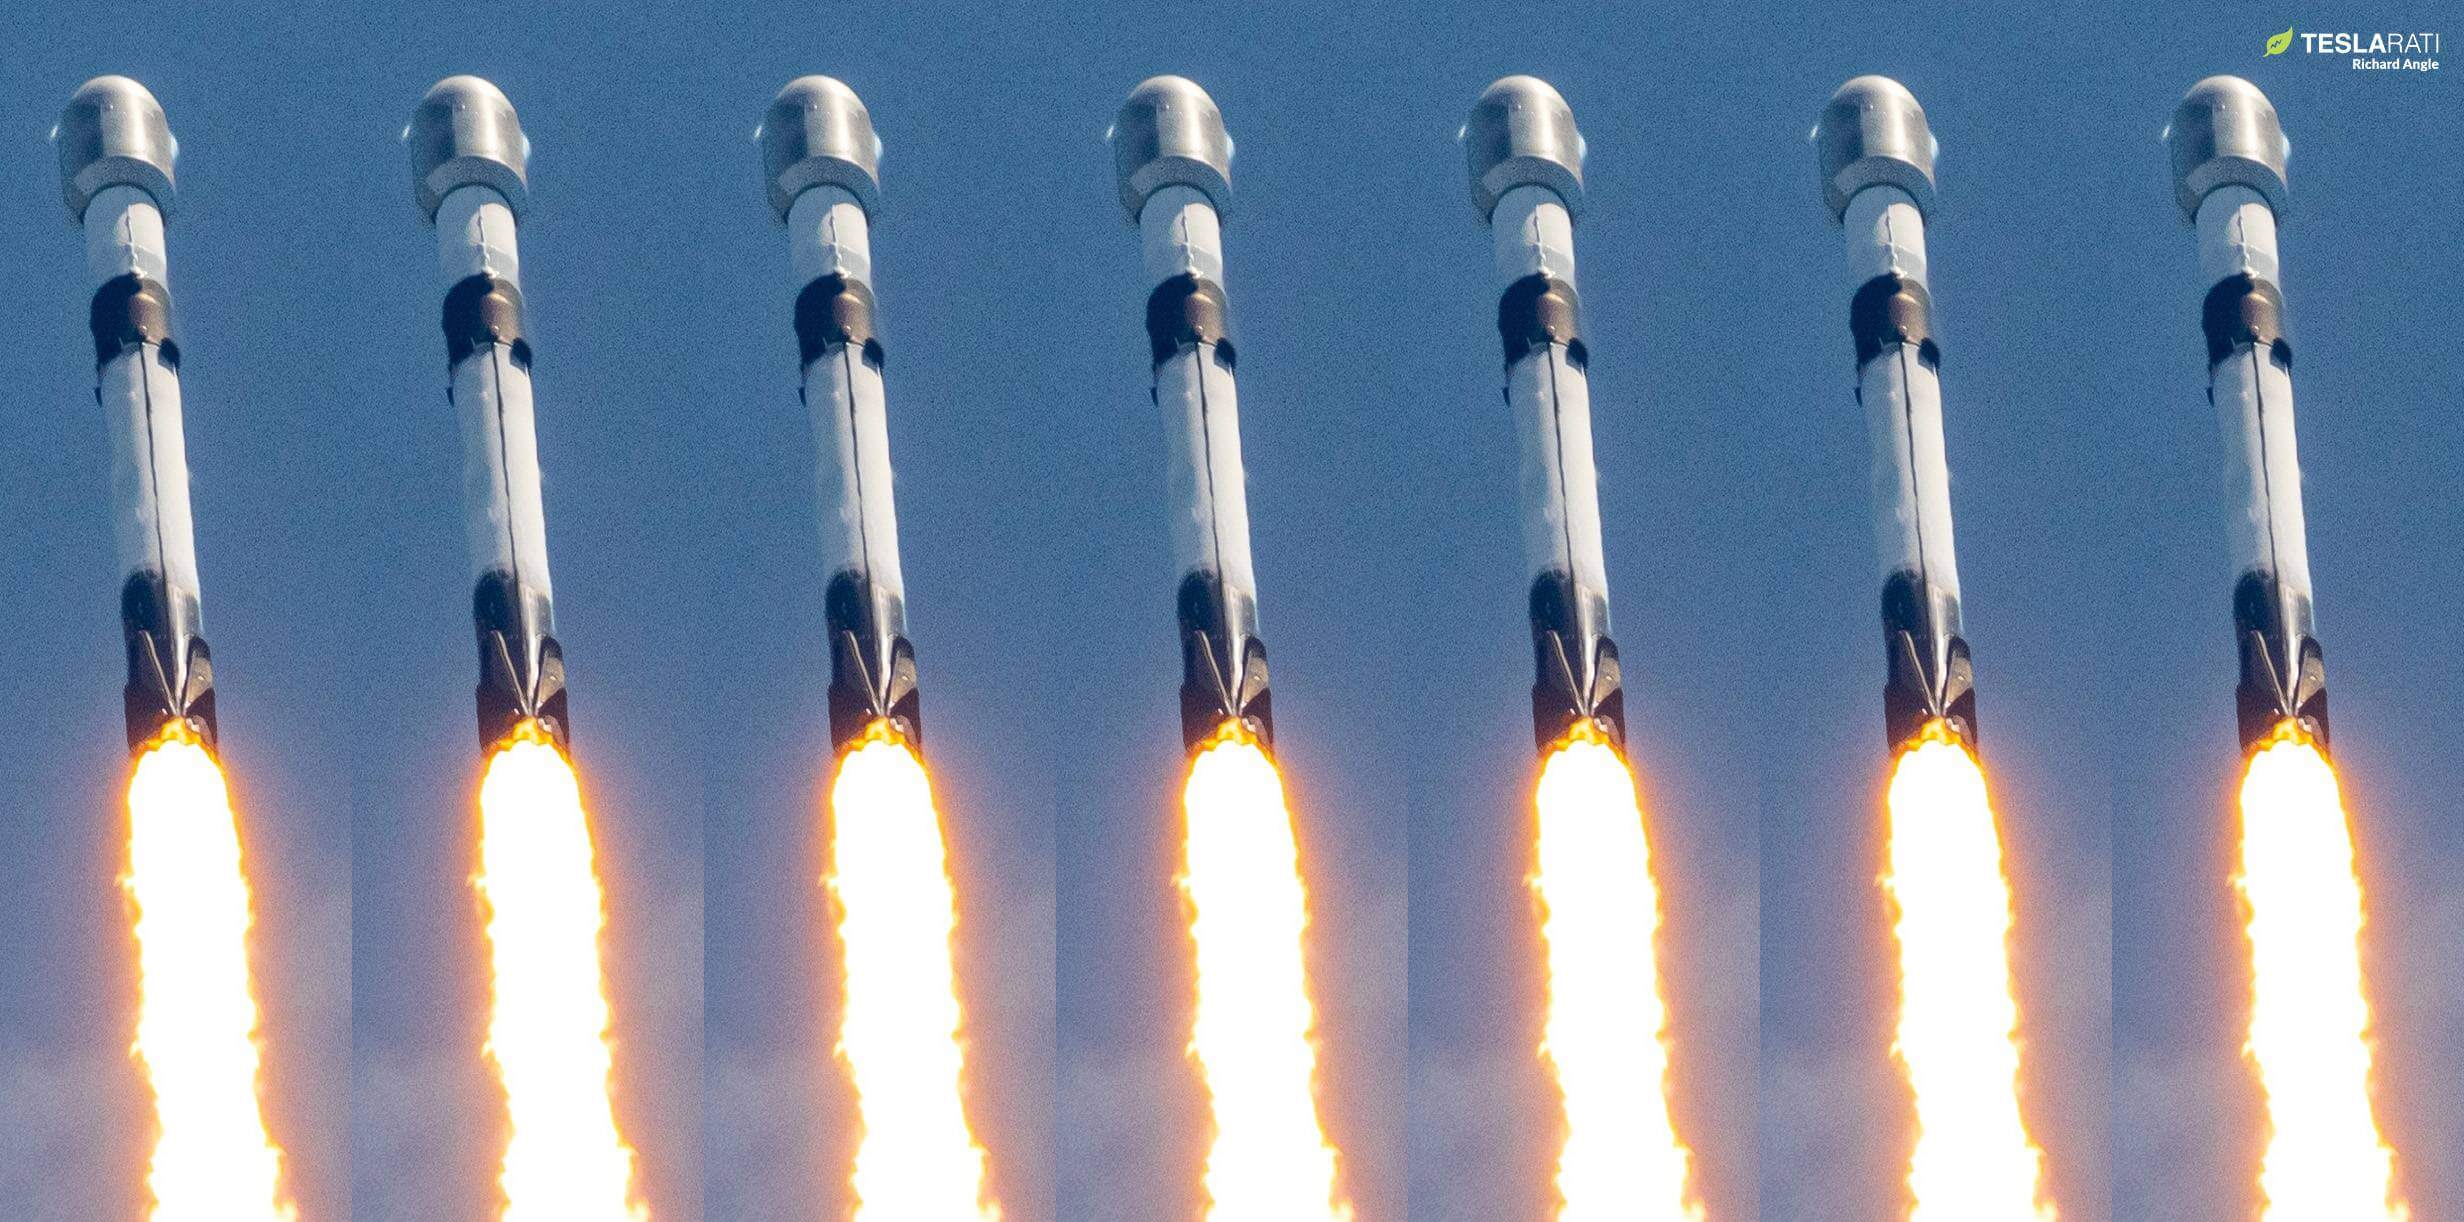 2023 年に SpaceX を 100 回打ち上げるというイーロン マスクの目標は、驚くほど実行可能に見えます